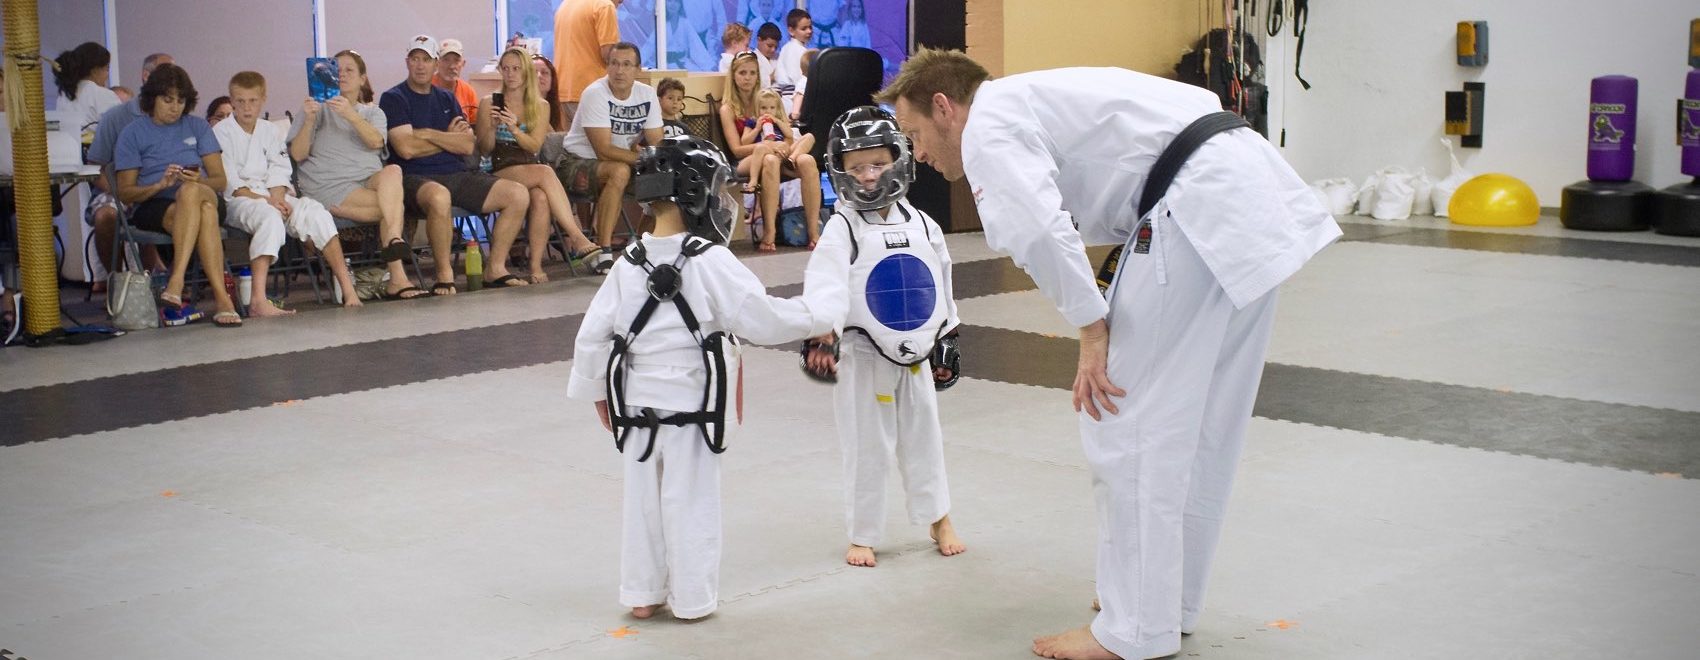 Kids martial arts karate class